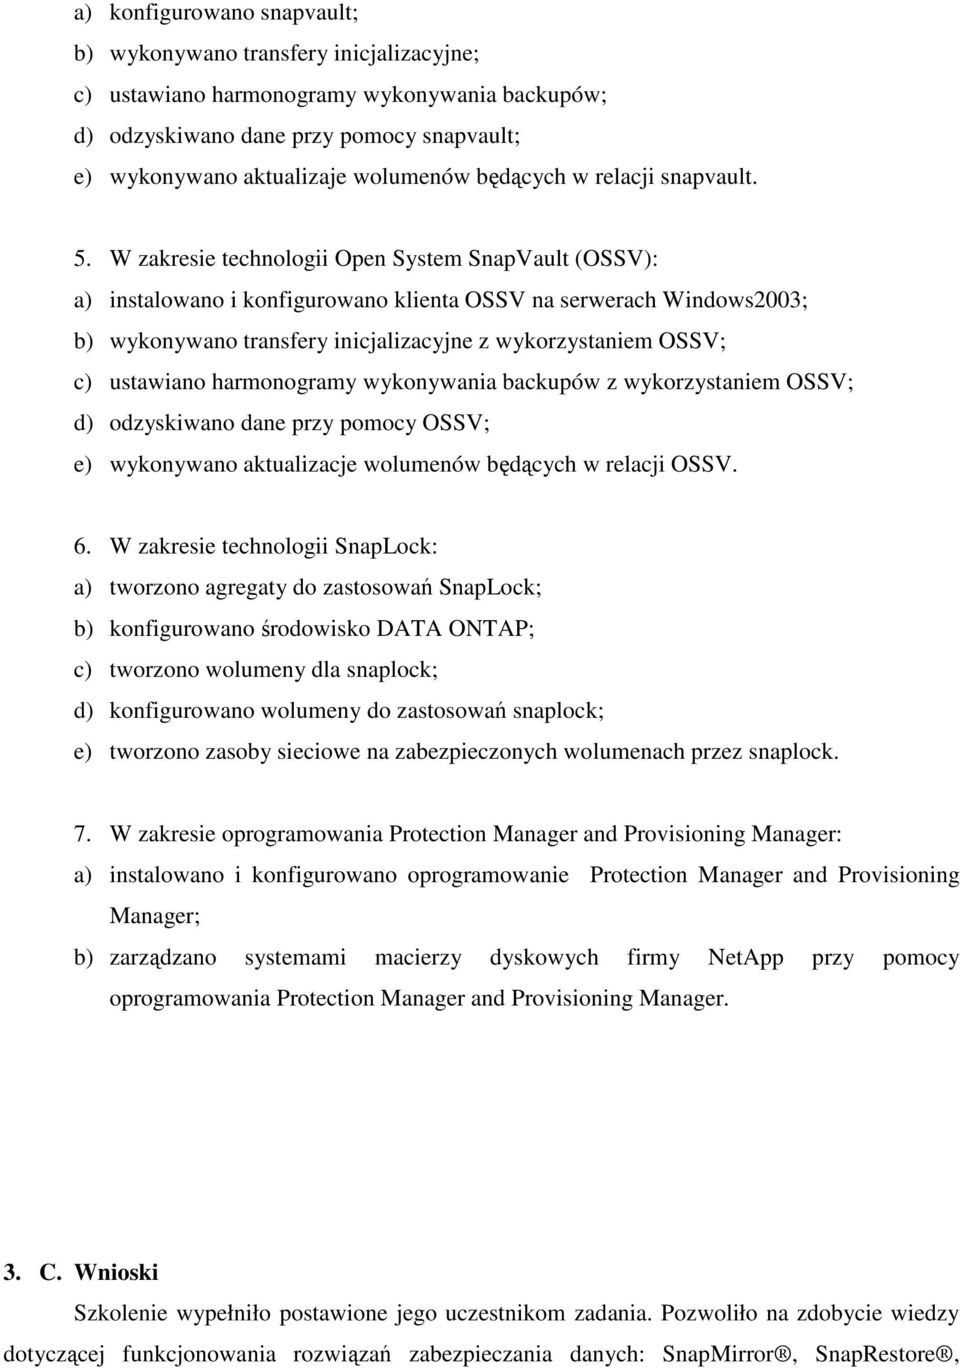 W zakresie technologii Open System SnapVault (OSSV): a) instalowano i konfigurowano klienta OSSV na serwerach Windows2003; b) wykonywano transfery inicjalizacyjne z wykorzystaniem OSSV; c) ustawiano